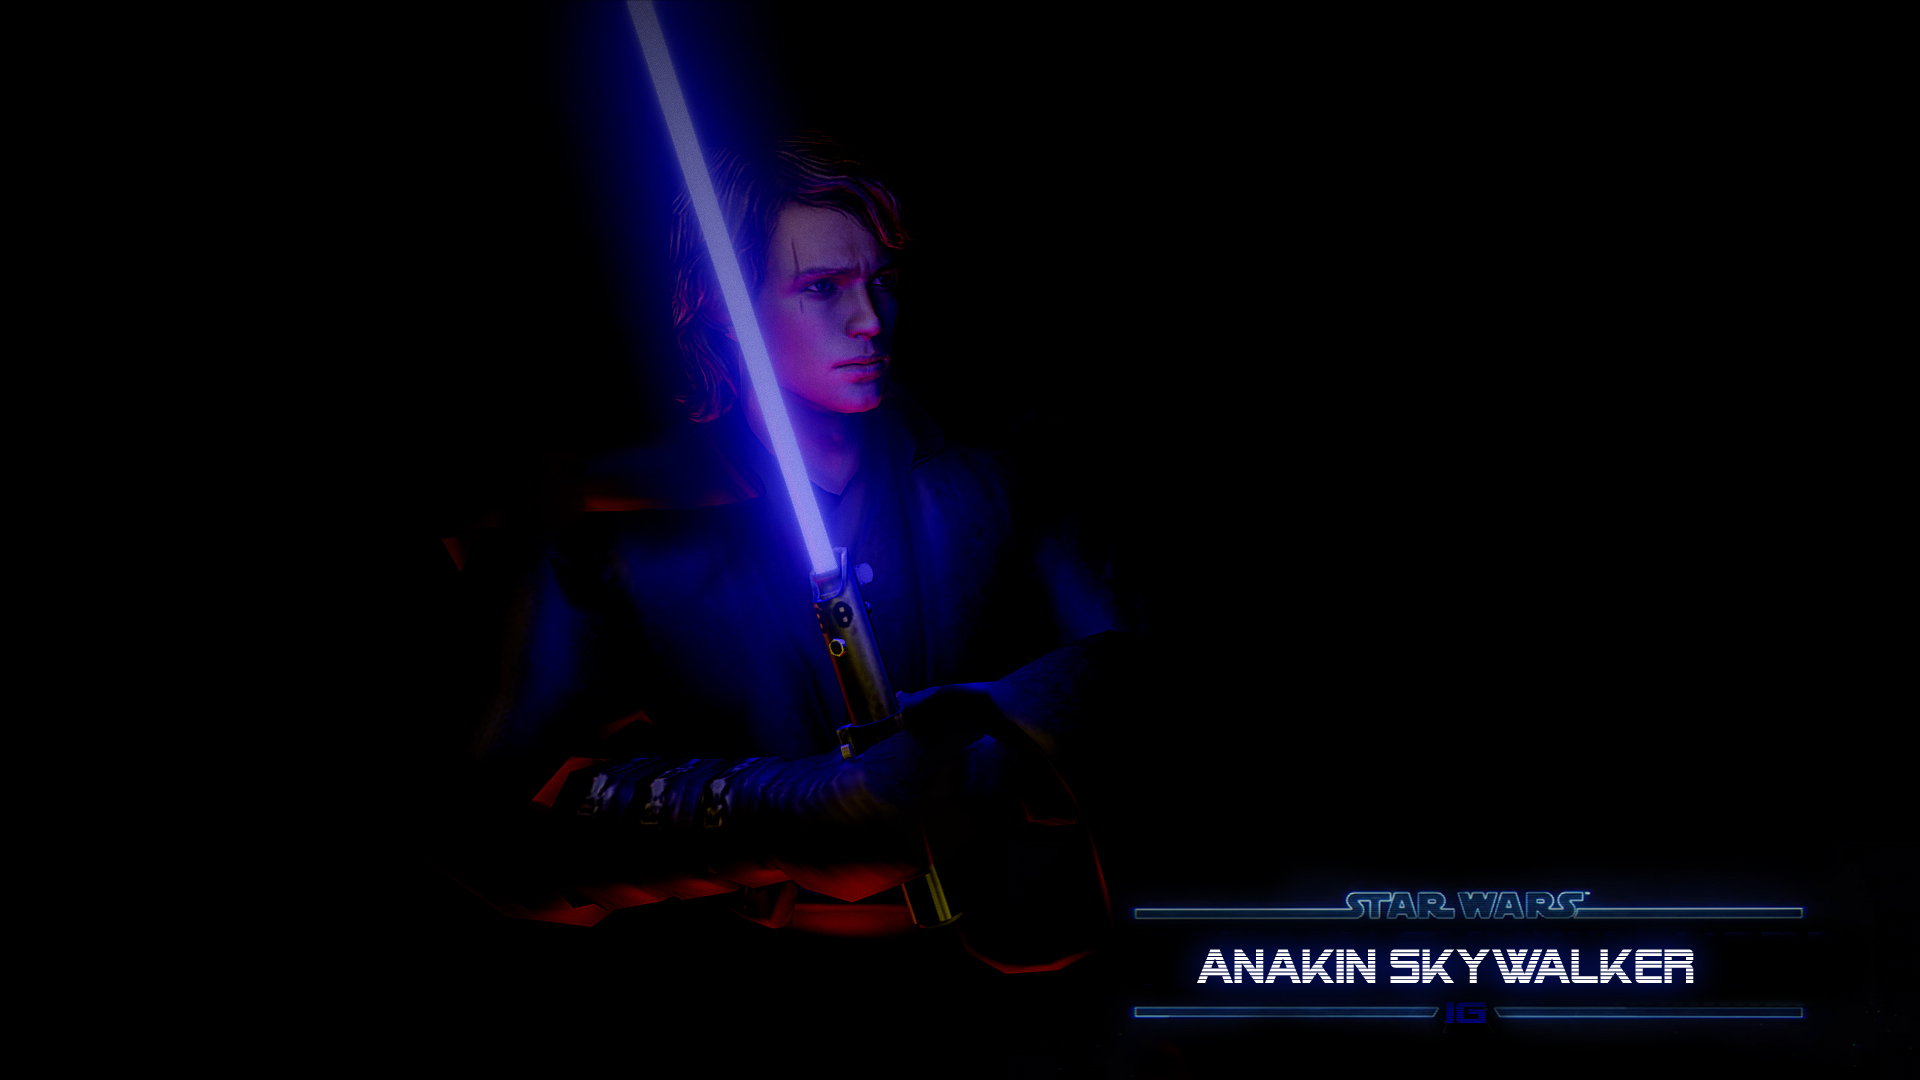 Anakin skywalker new version. 